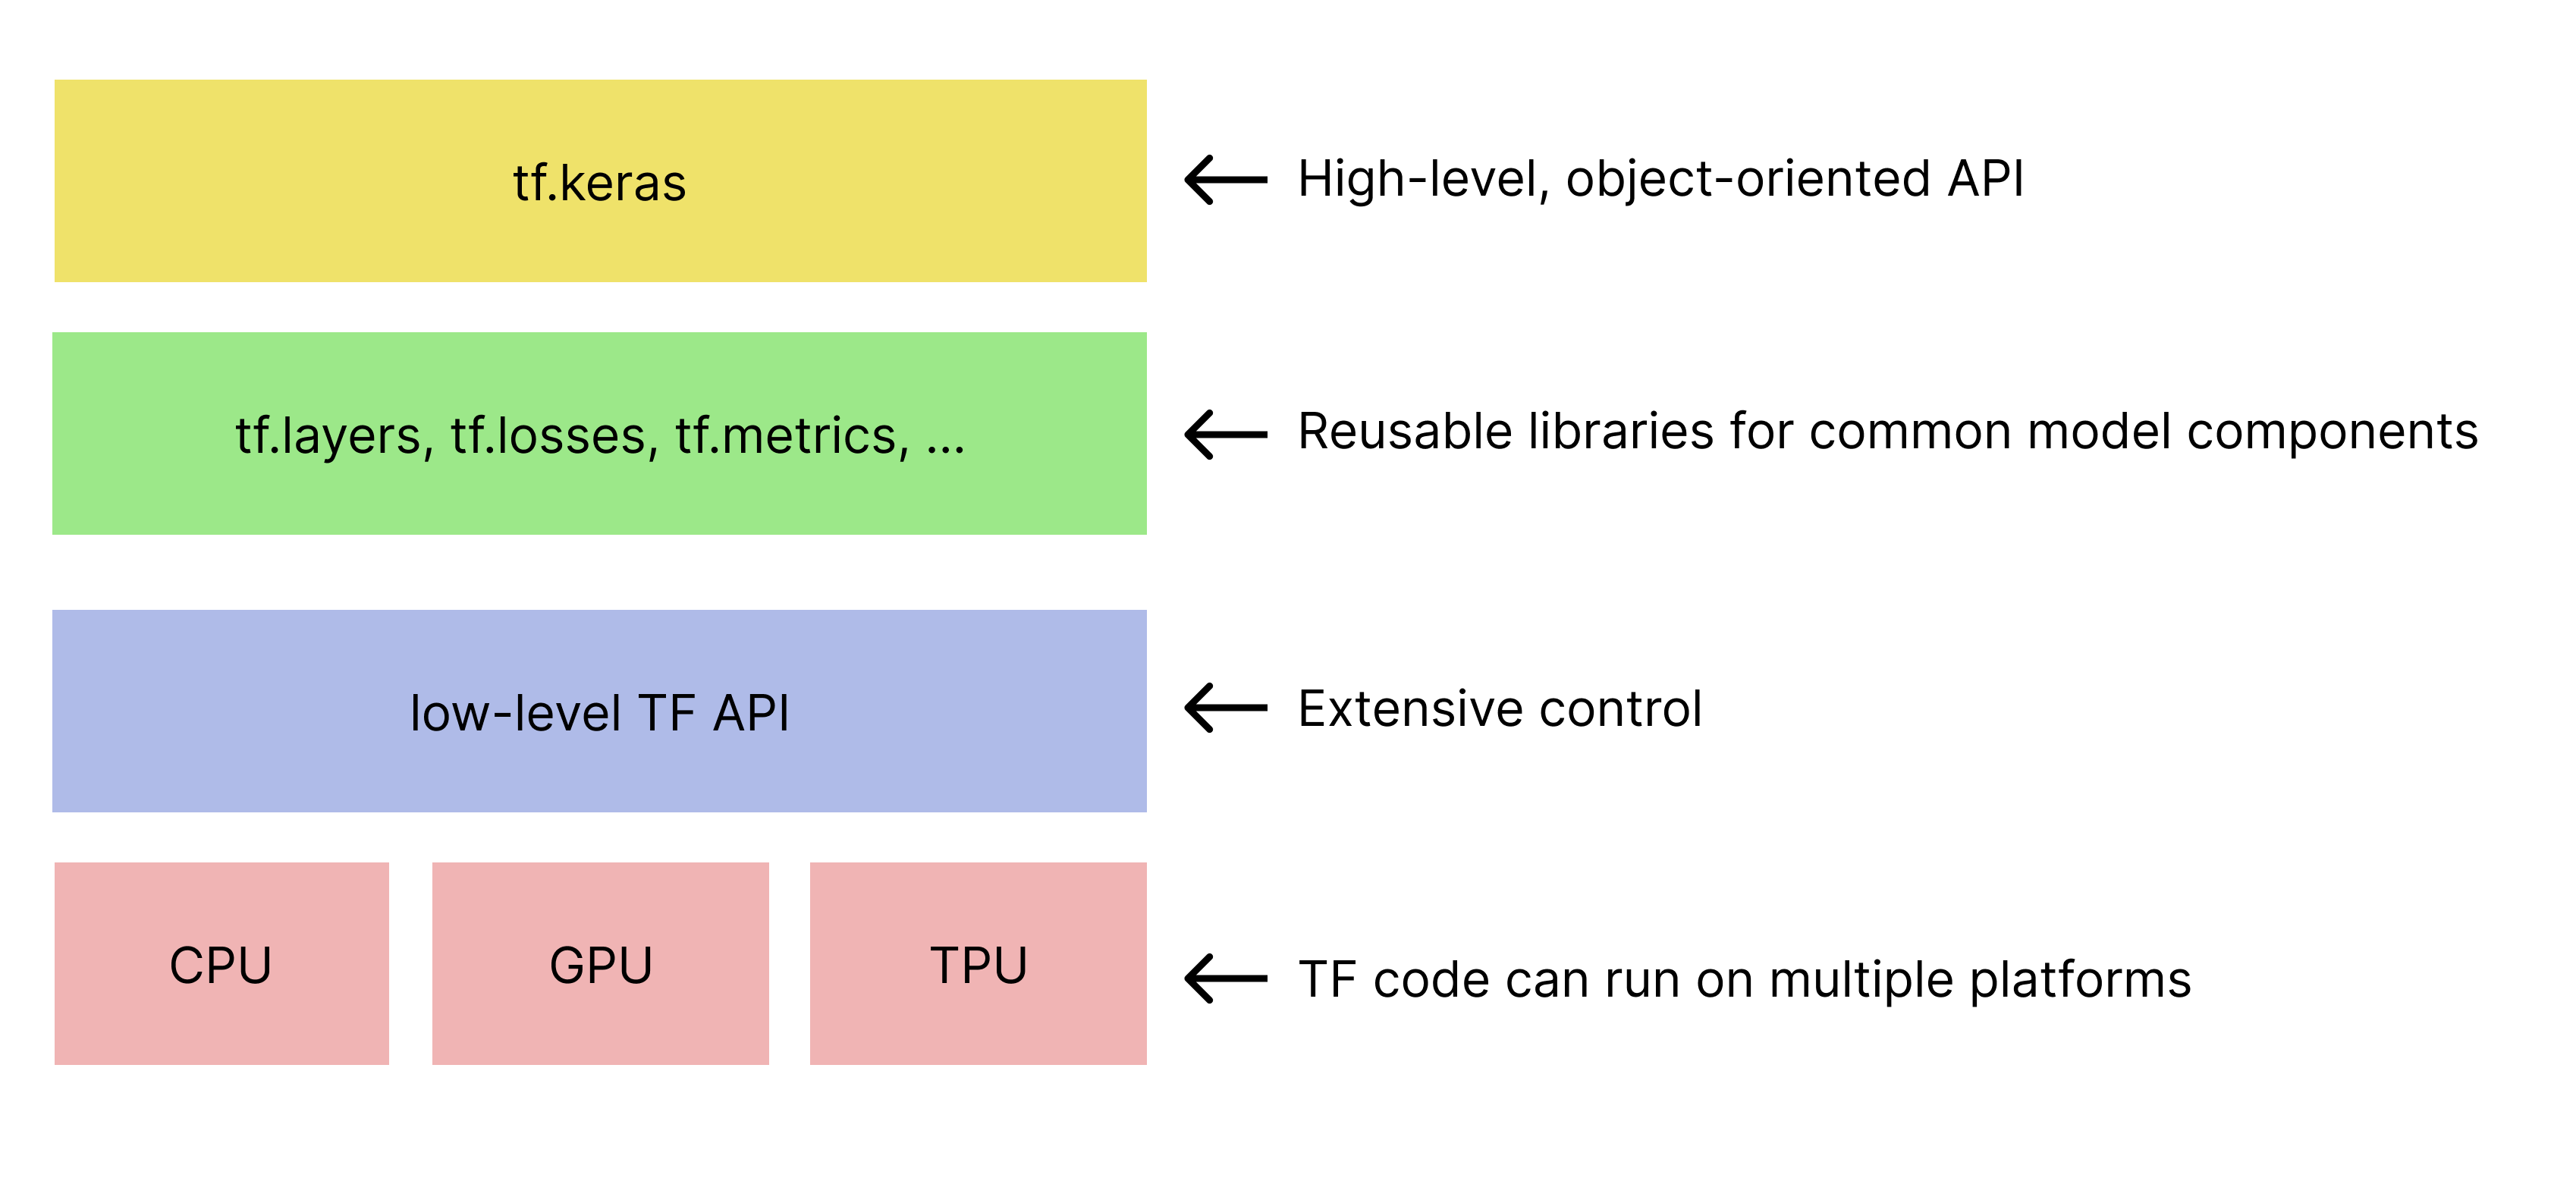 Jerarquía simplificada de los kits de herramientas de TensorFlow. 
   La API de tf.keras está en la parte superior.